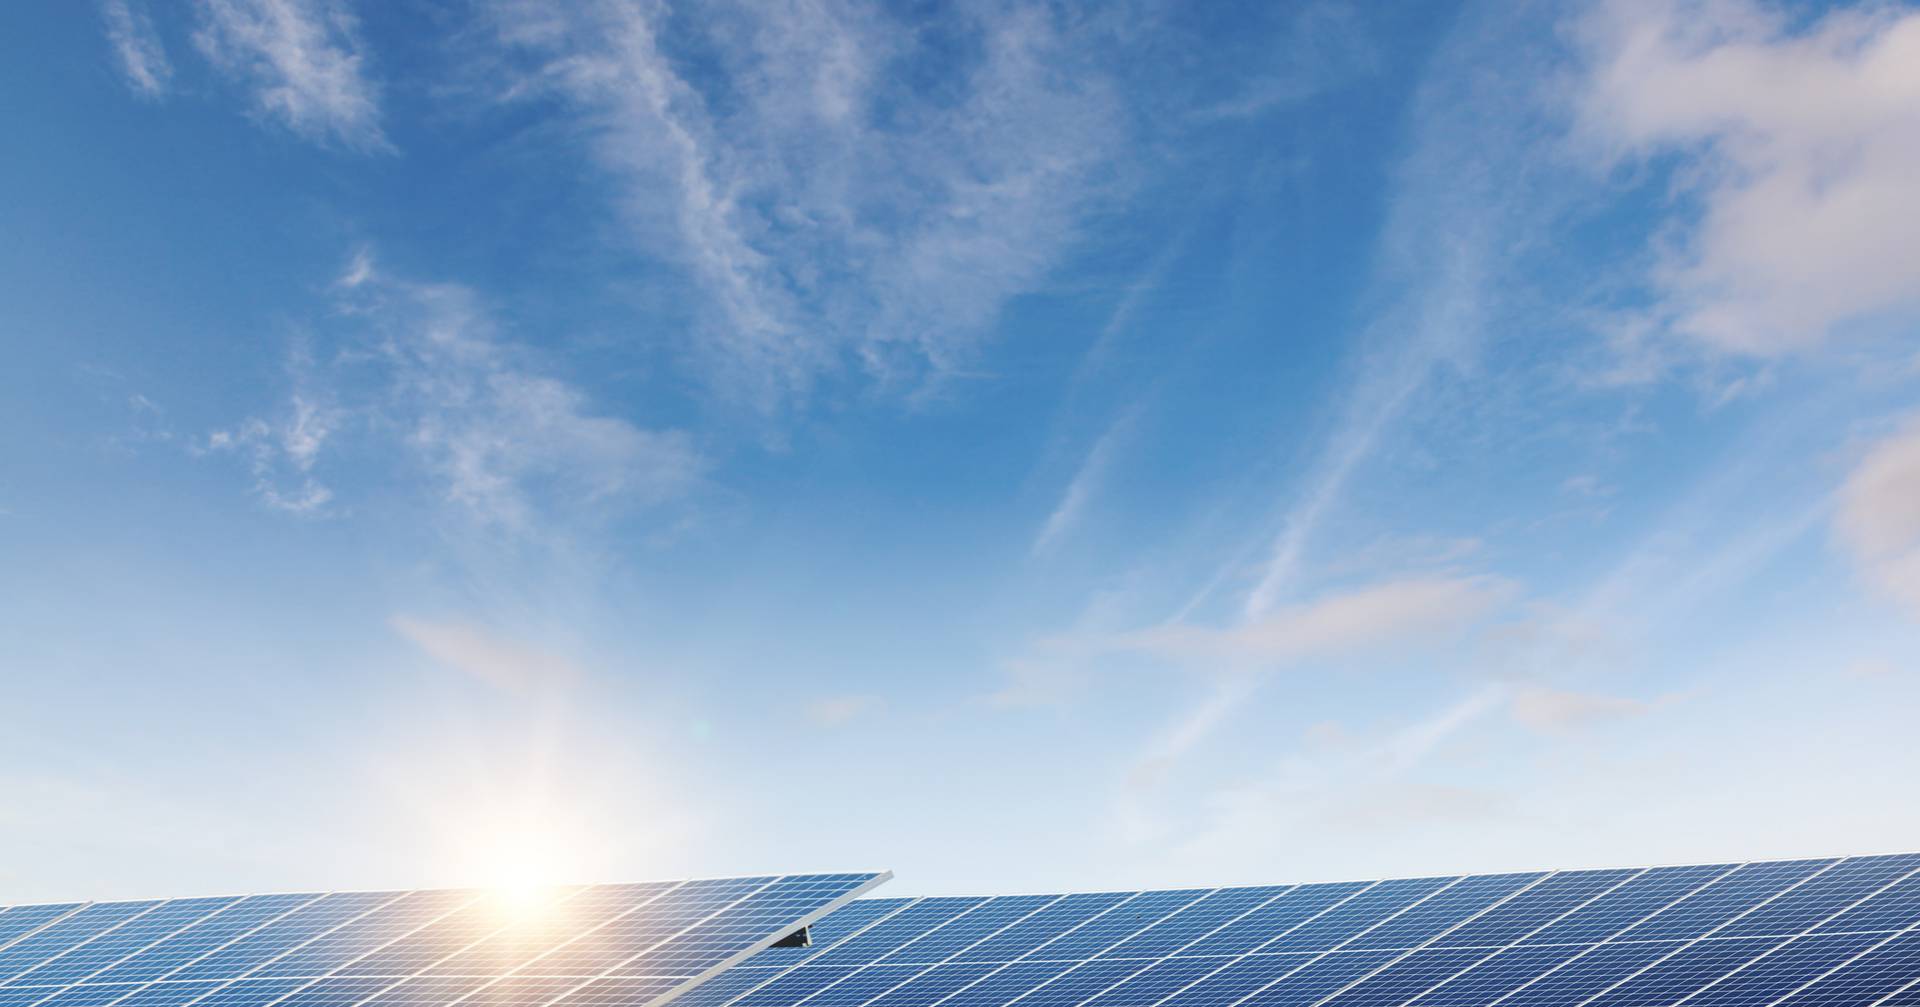 Energia fotovoltaica: projectos aprovados nos últimos três meses aumentam em 50% a capacidade total em Portugal